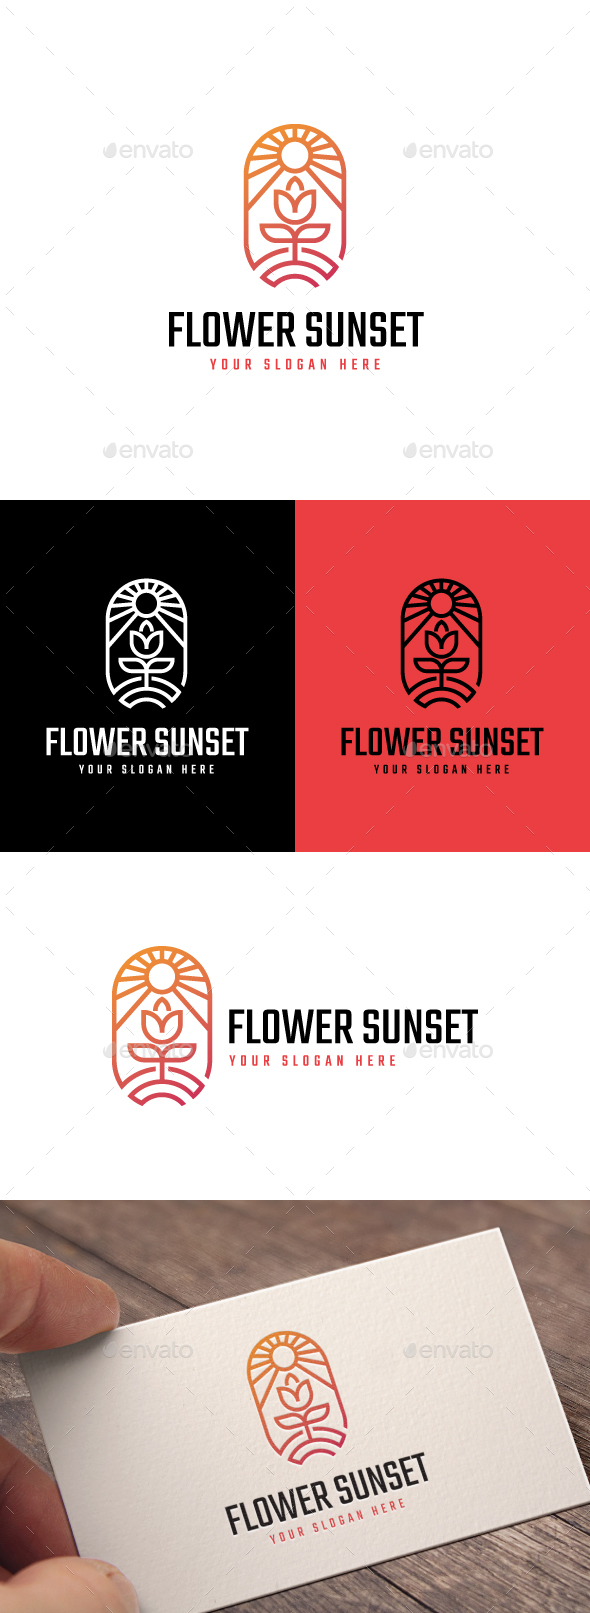 Flower Sunset Logo